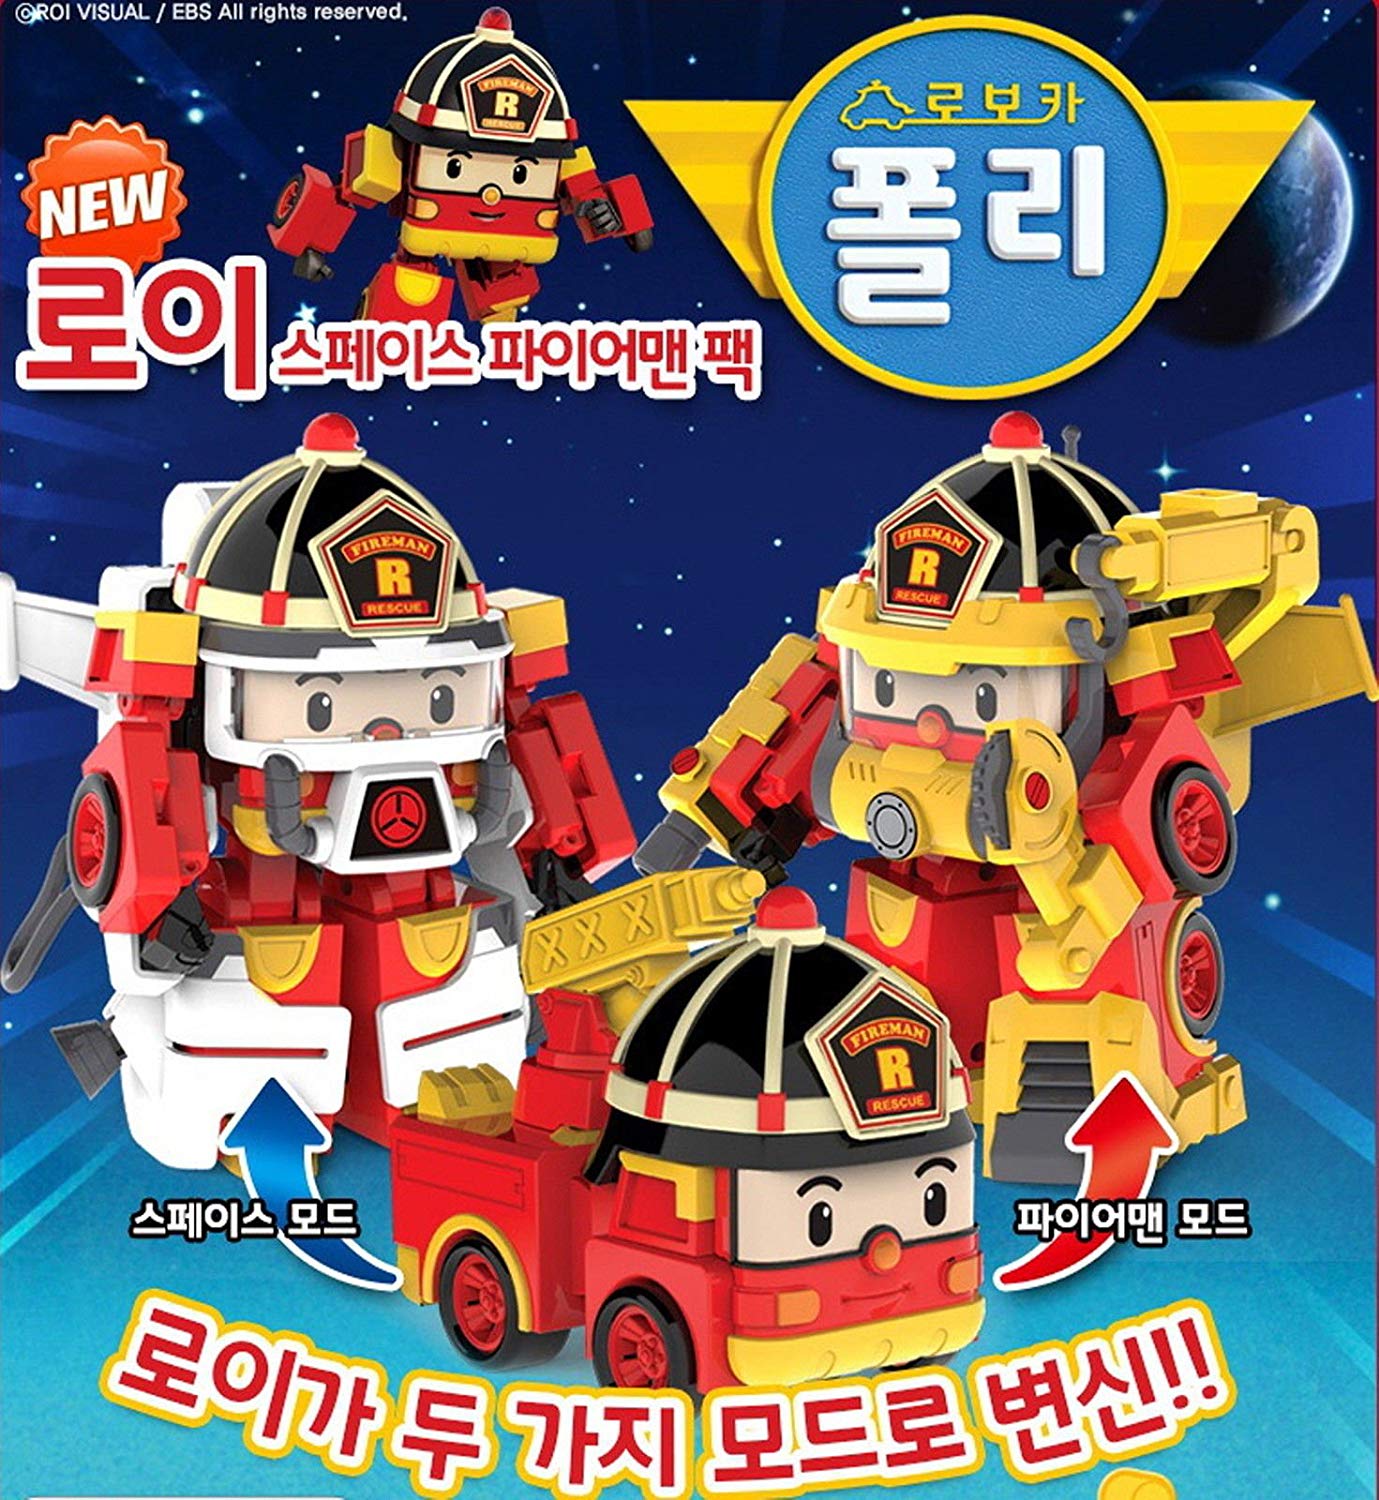 Robot Fireman - HD Wallpaper 